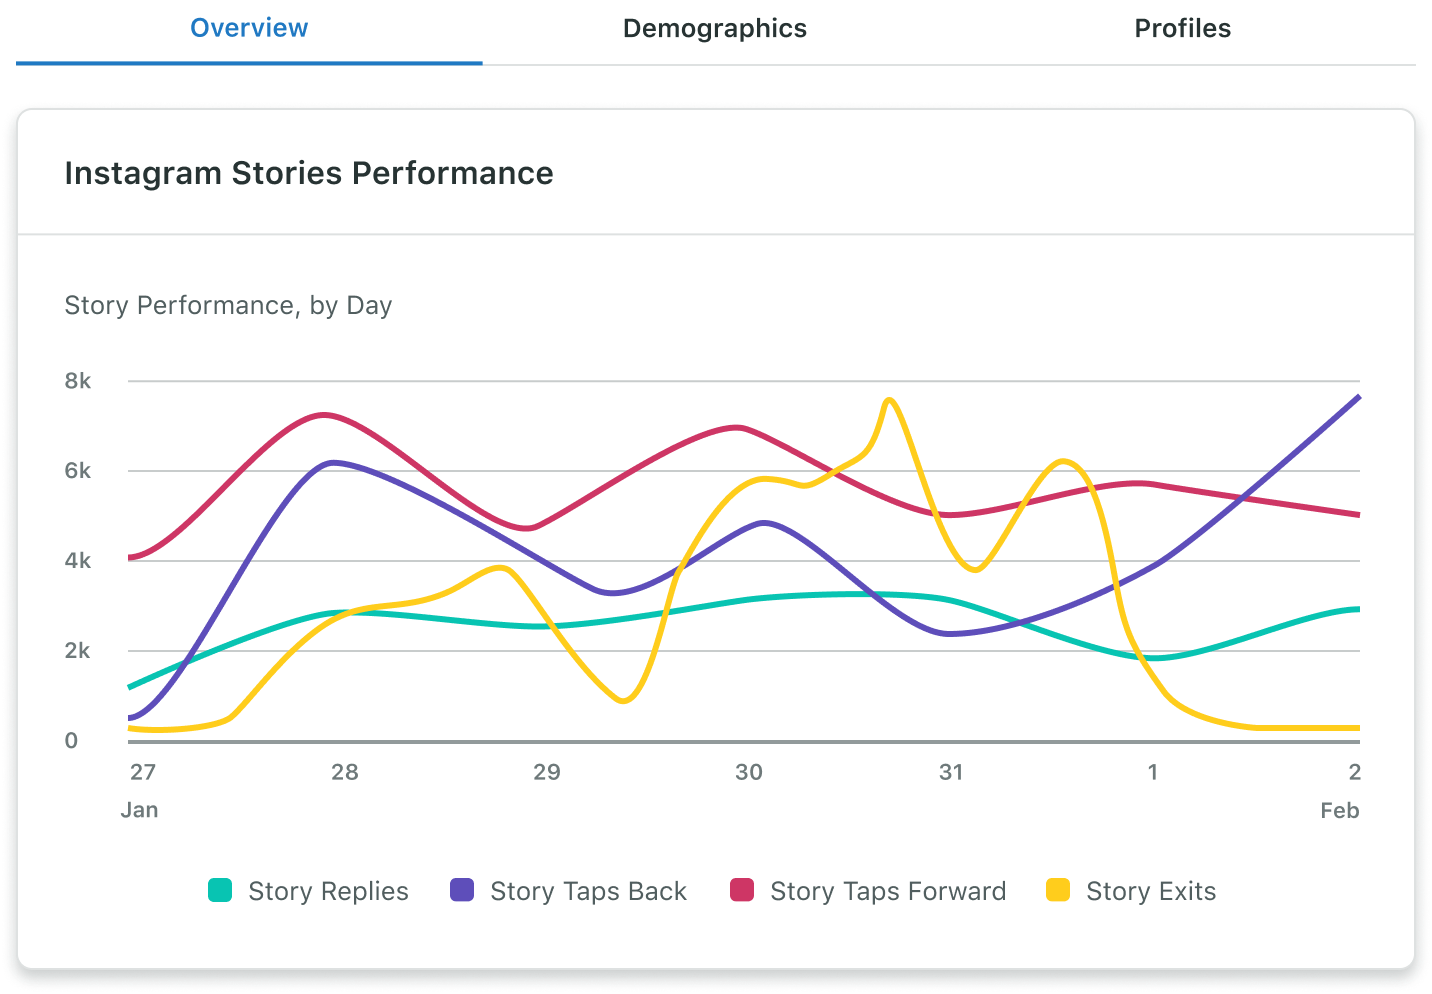 Le rapport sur les profils professionnels d'Instagram de Sprout comprend des données quotidiennes sur les performances des stories (comme les réponses, les retours à la story précédente, les passages à la story suivante et les abandons) pour la plage de dates sélectionnée.